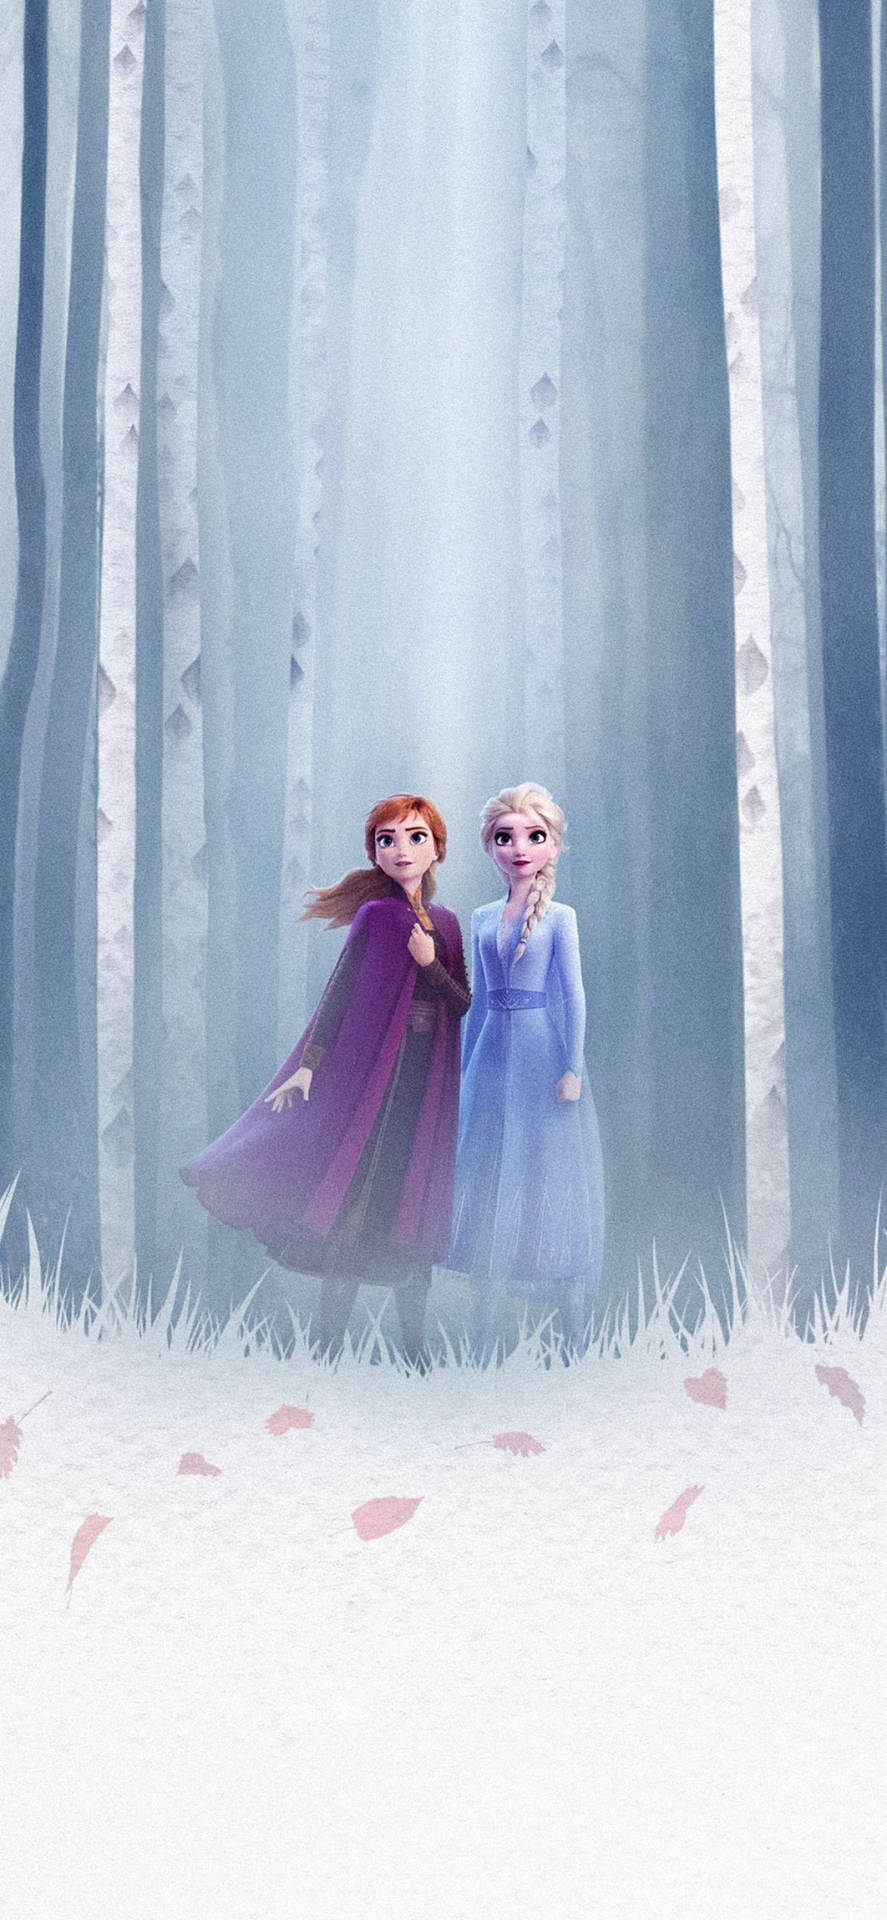 Elsa&Anna In The Woods Frozen 2 Wallpaper